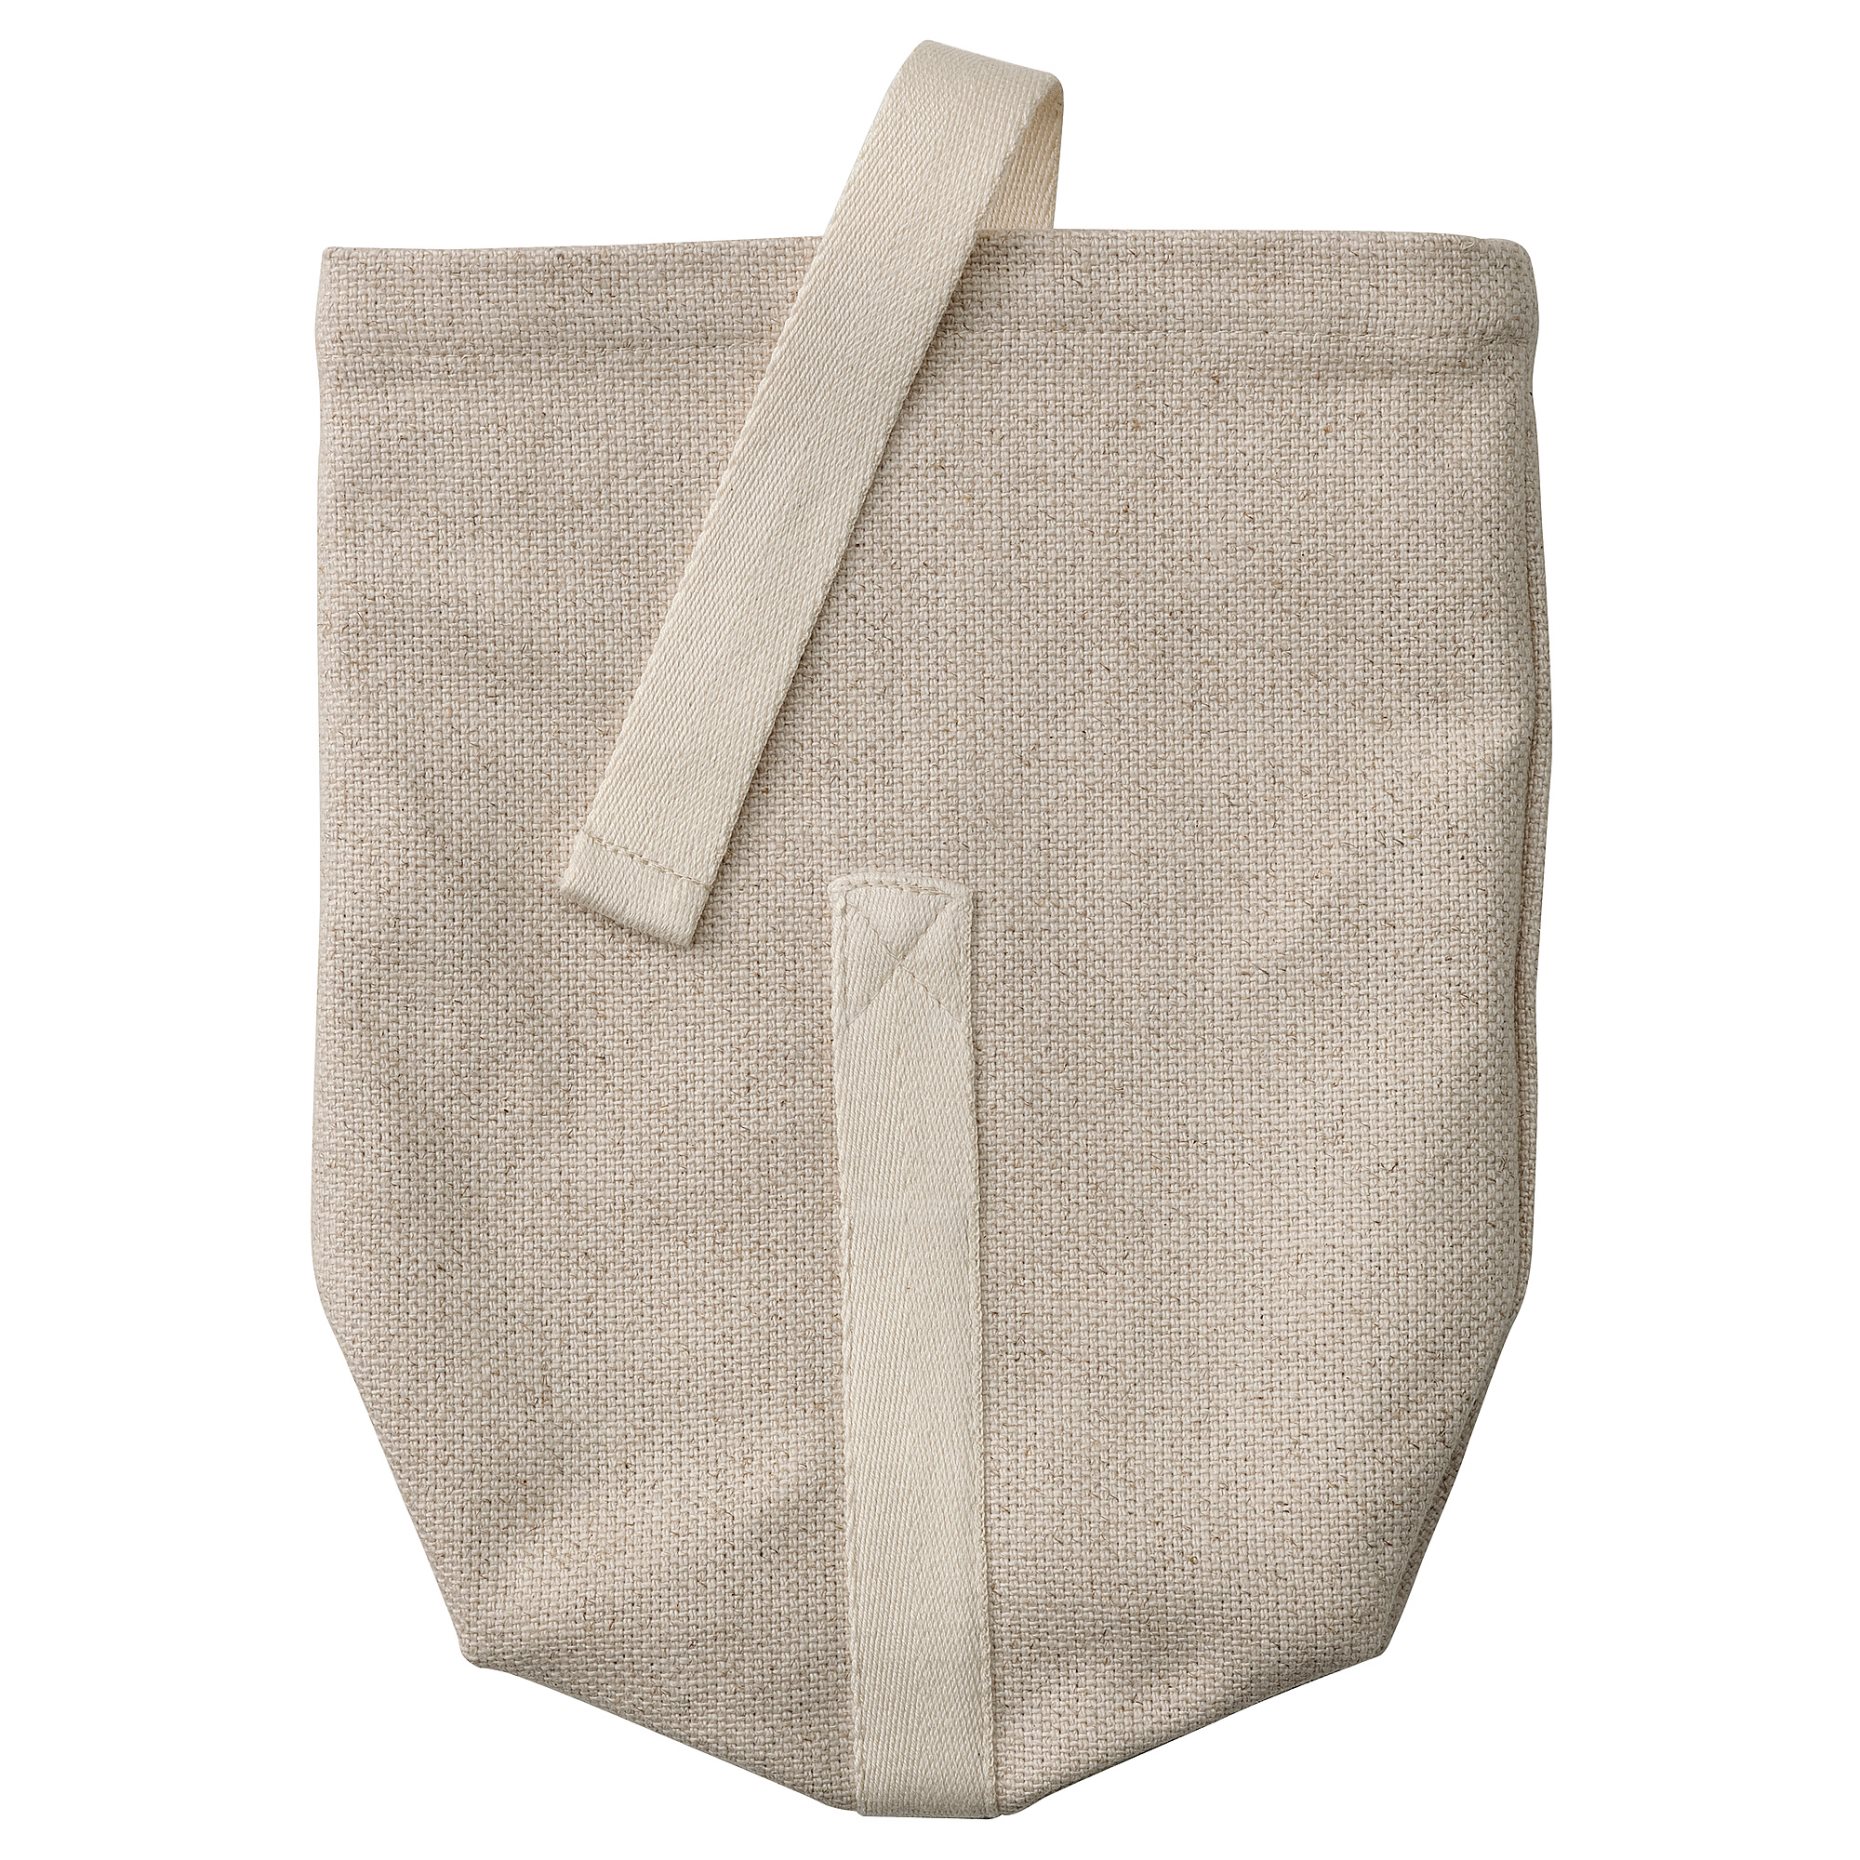 HAJMAL, τσάντα κολατσιού/ύφασμα, 14x6x22 cm, 105.154.90